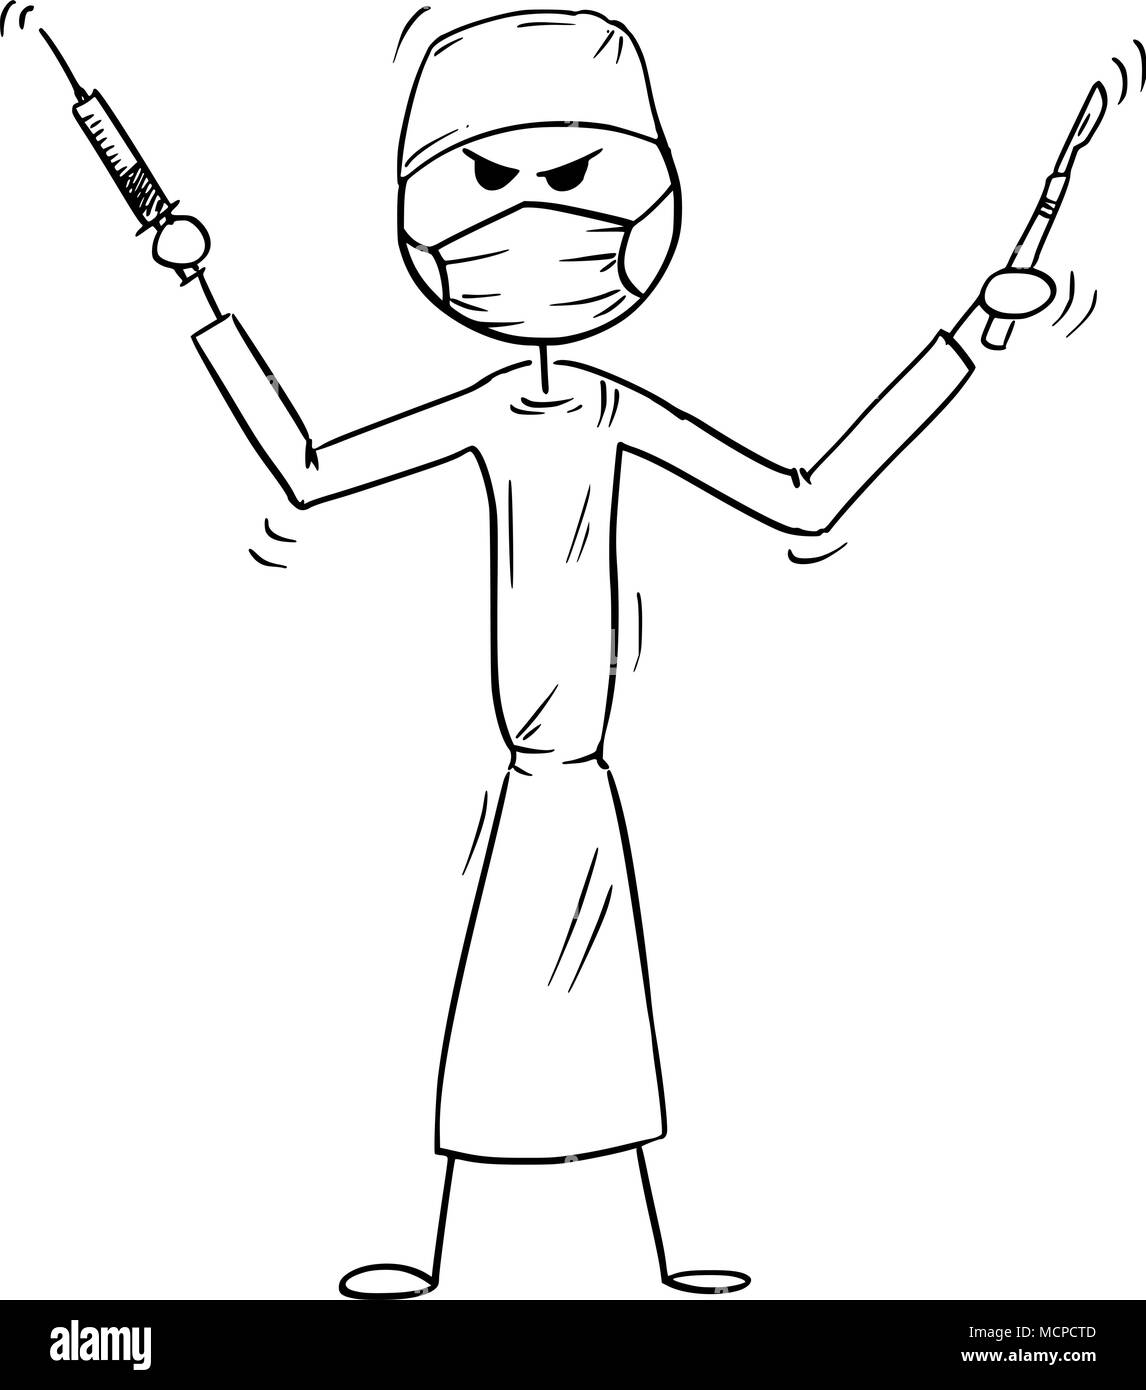 Cartoon von verrückt, verrückt oder wahnsinnig Arzt Chirurg Holding Skalpell und Spritze Stock Vektor